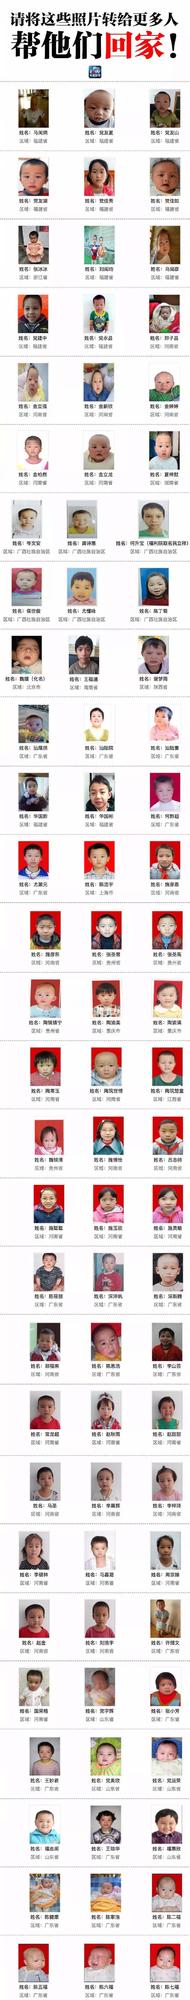 622名被拐儿童解救名单公布 其中多名来自湖北